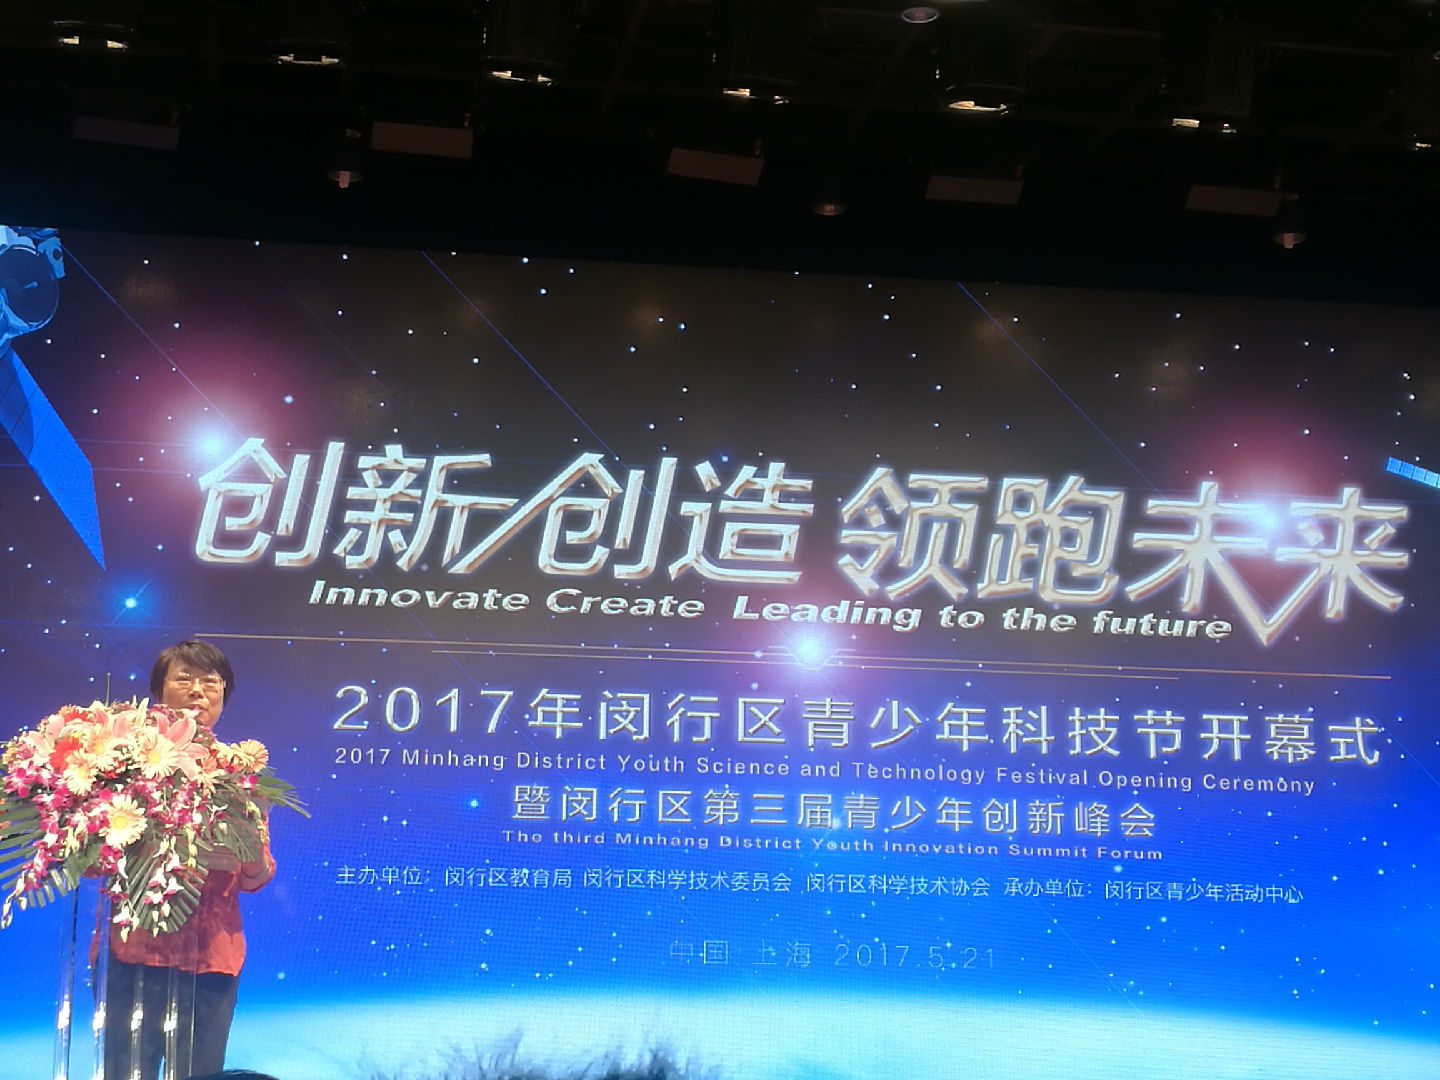 上海众印成为闵行教育创客联盟基地单位